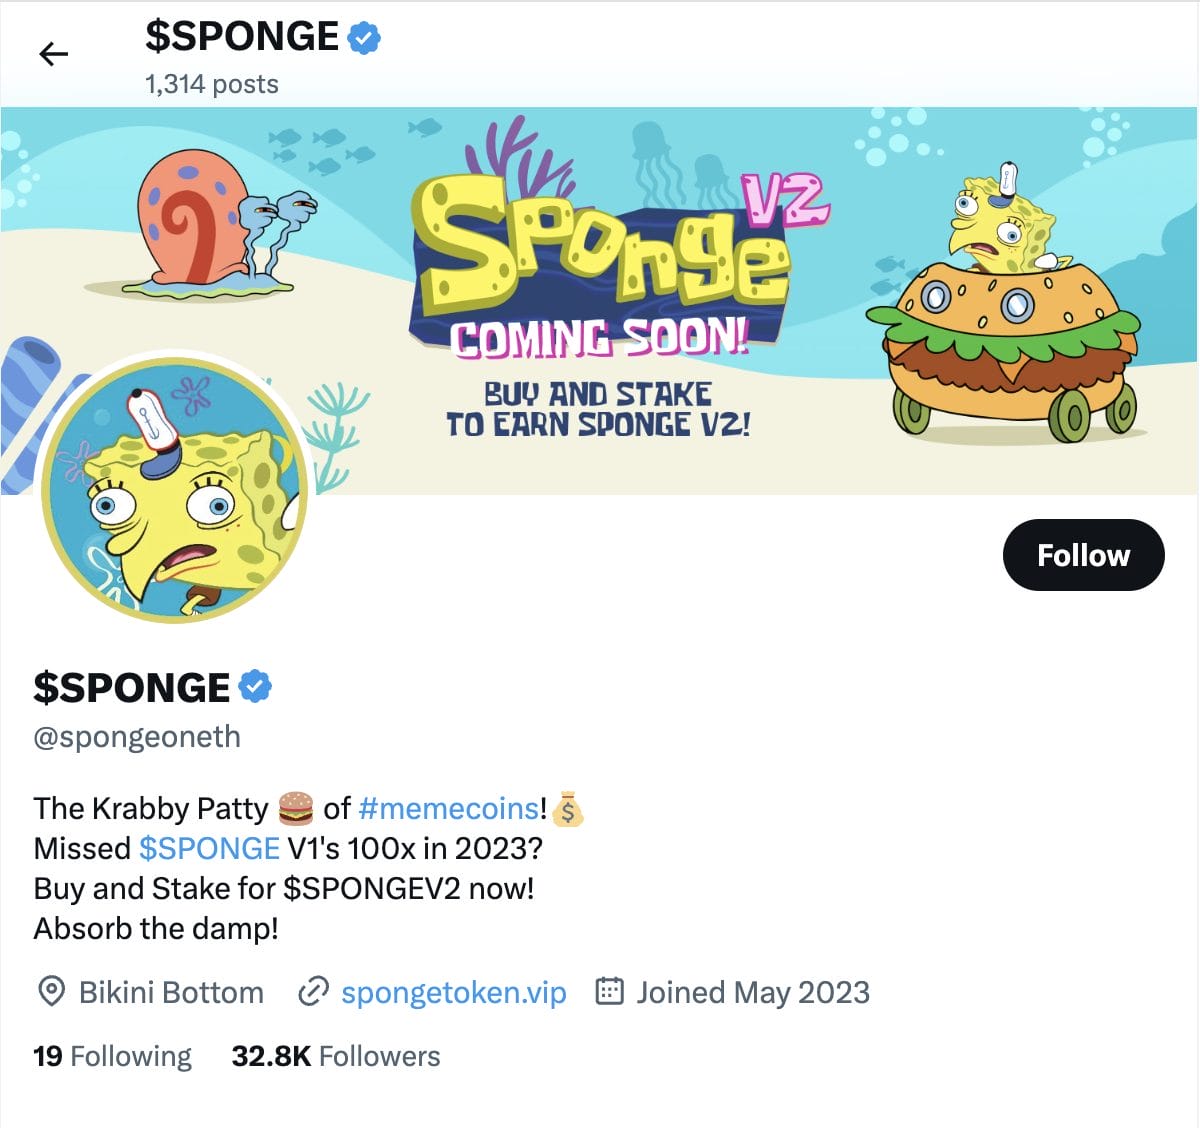 Sponge V2 social media 